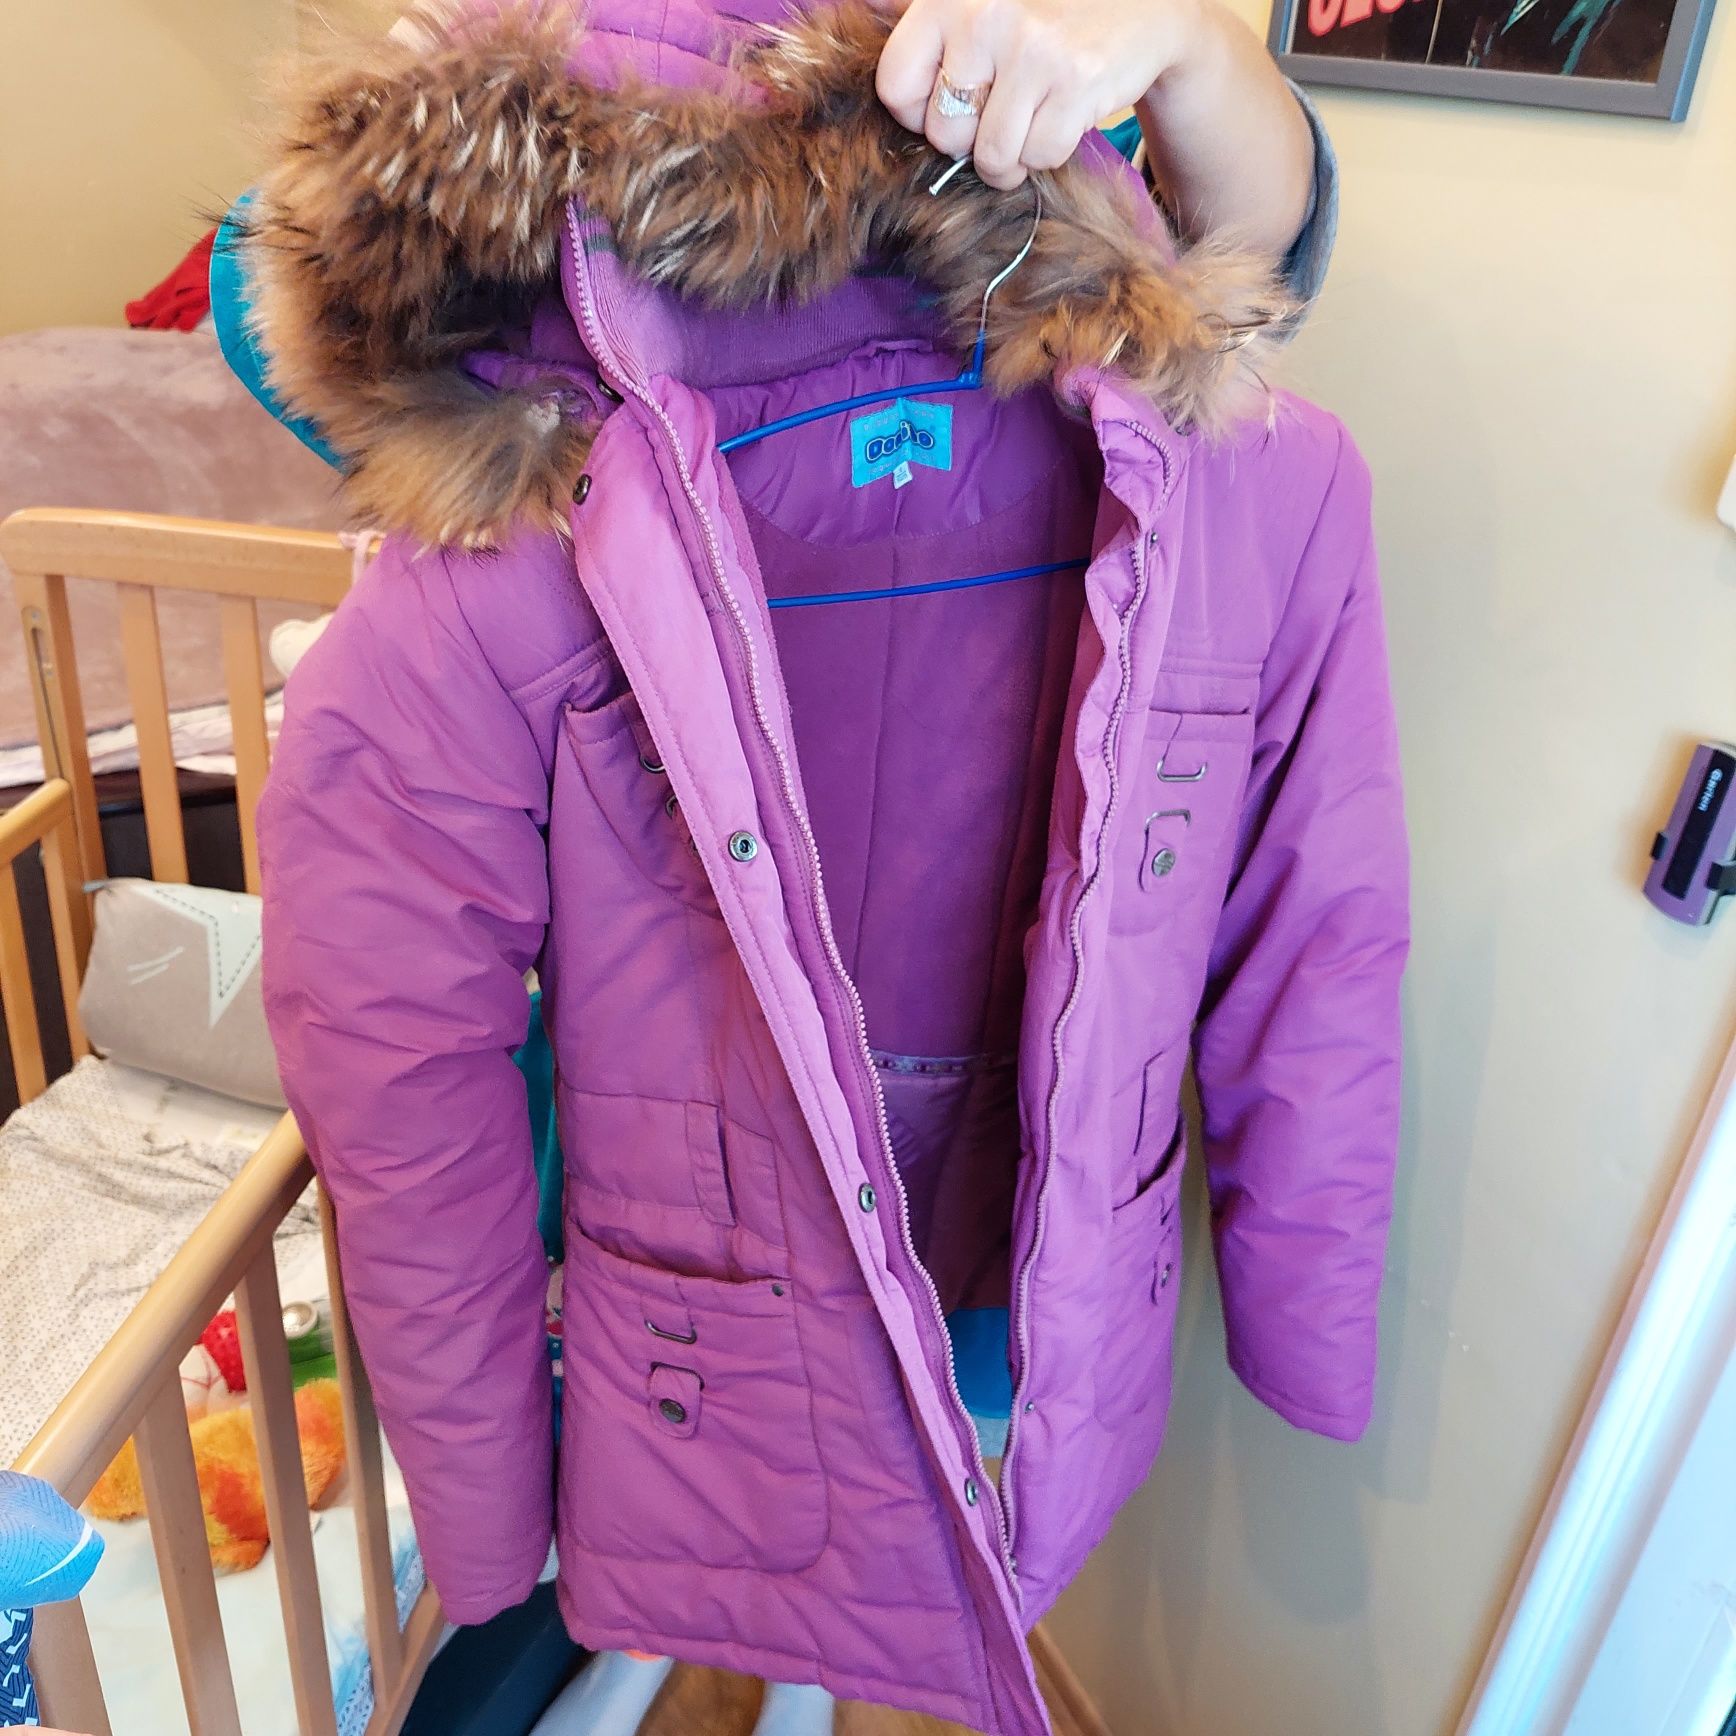 Куртка удлинённая Donilo сиренивого/пурпурного цвета 164 см, 14 лет